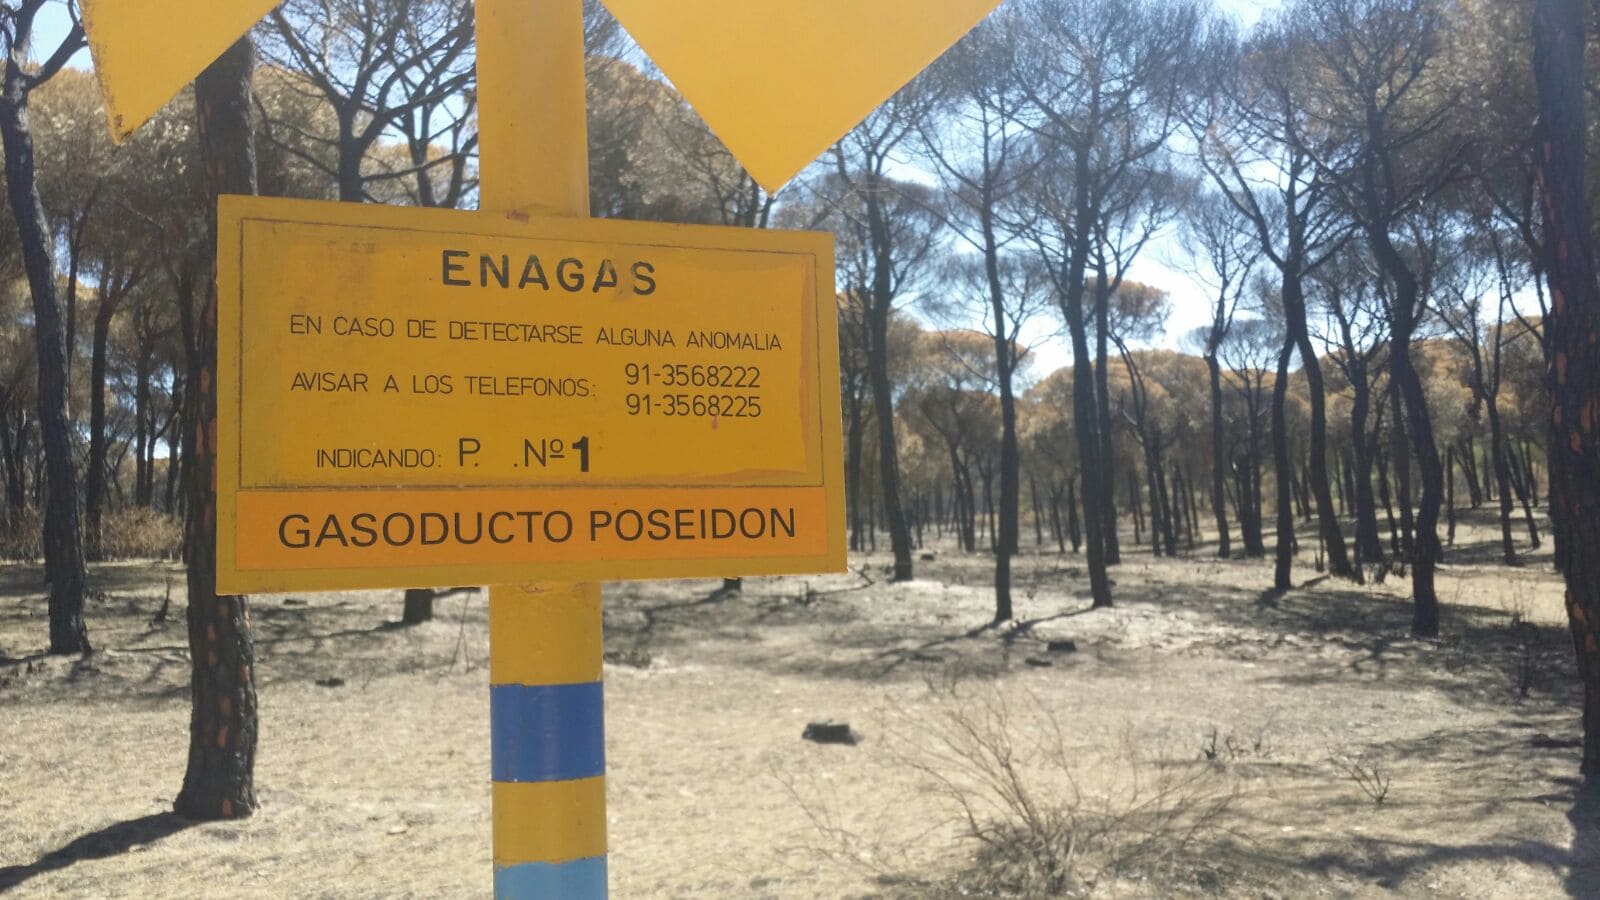 Infraestructura de Enagás en una zona quemada de Doñana. Foto: José Manuel Cantó.